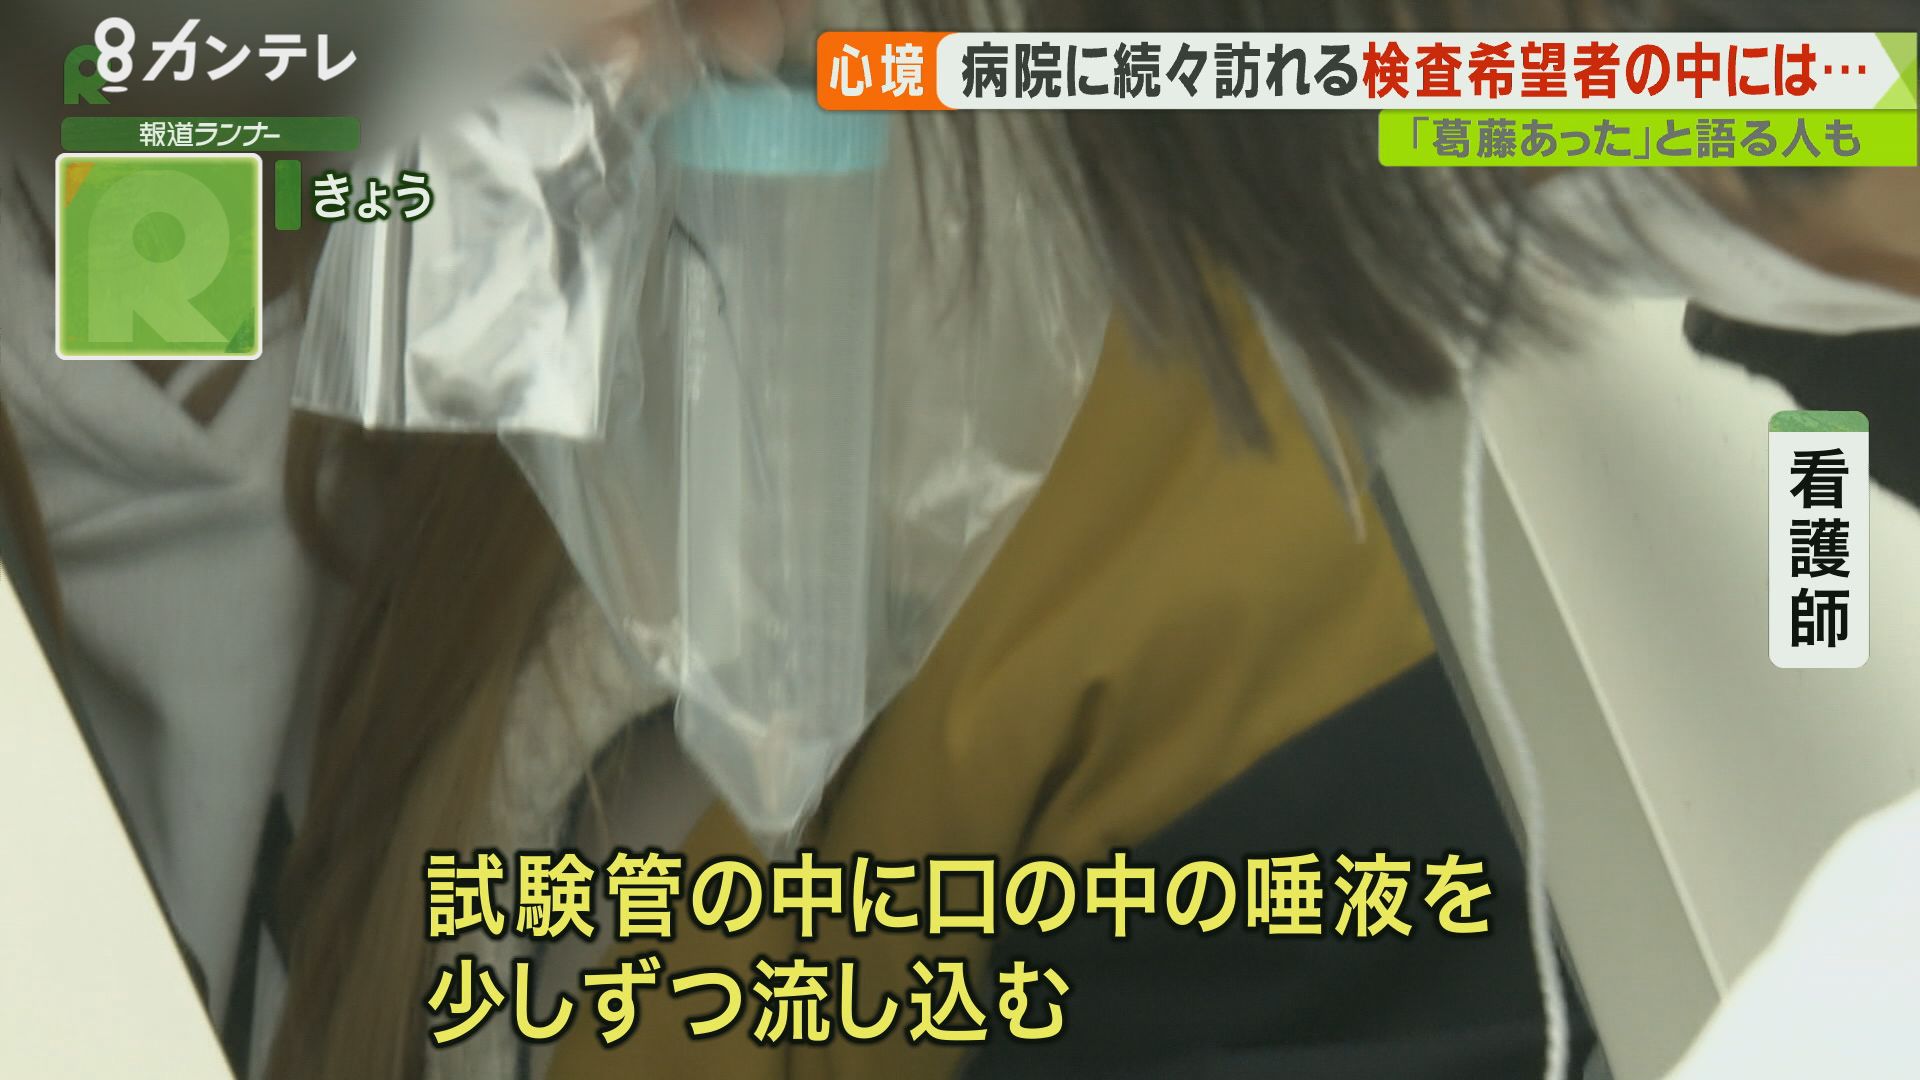 拒否 コロナ 検査 ウイルス検査「拒否」全国で290件 日本医師会が調査結果公表